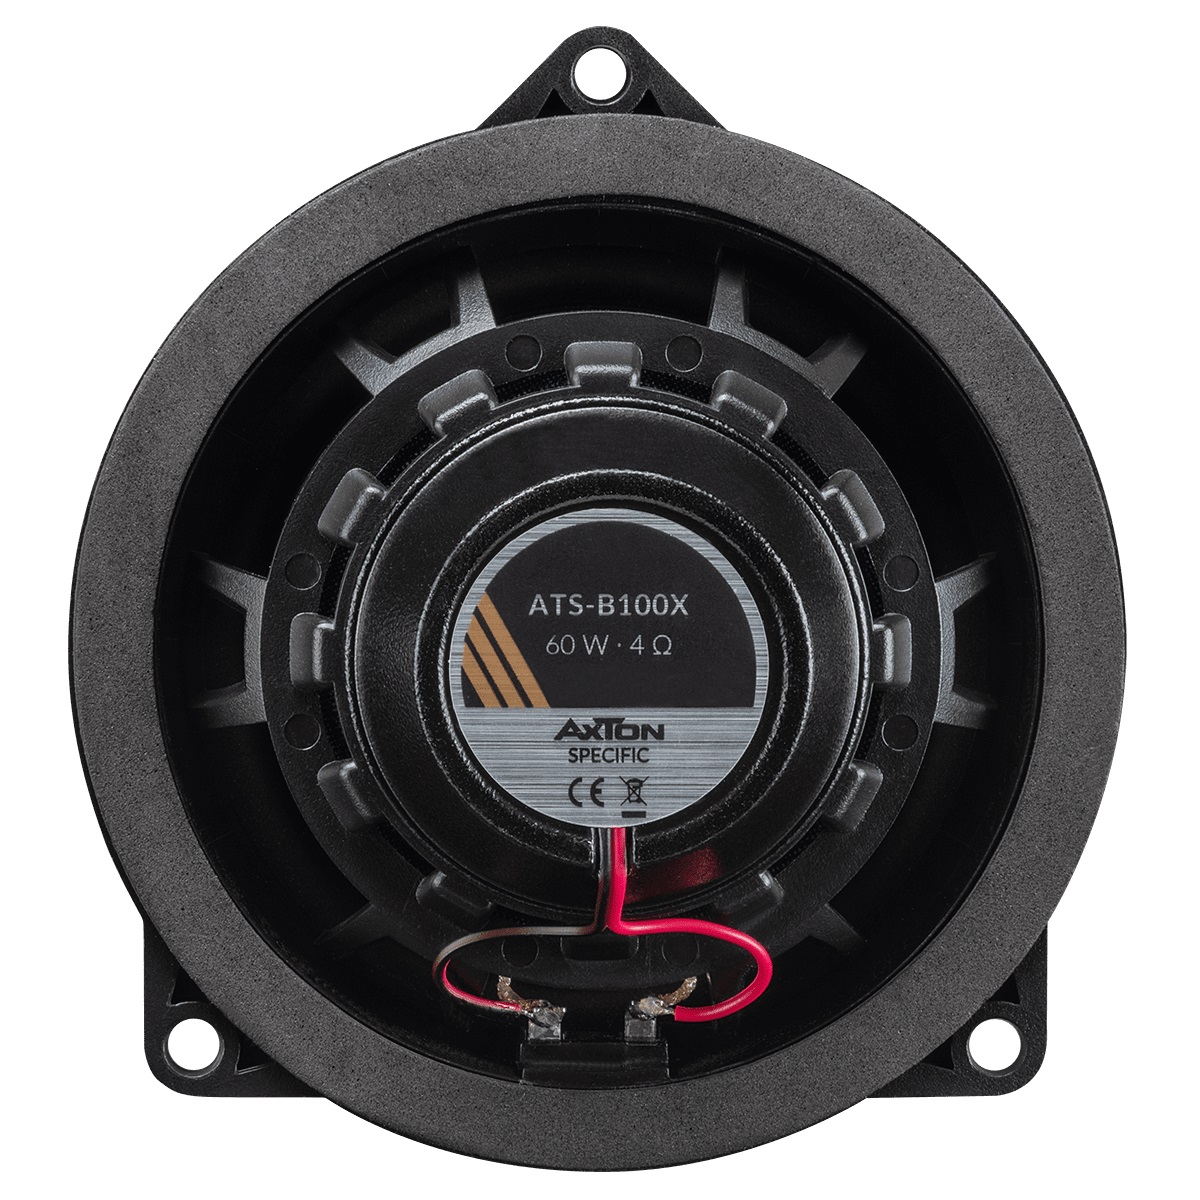 AXTON ATS-B100X 2-Wege 10 cm (4") Koaxial Lautsprecher System kompatibel mit BMW und Mini Fahrzeugen